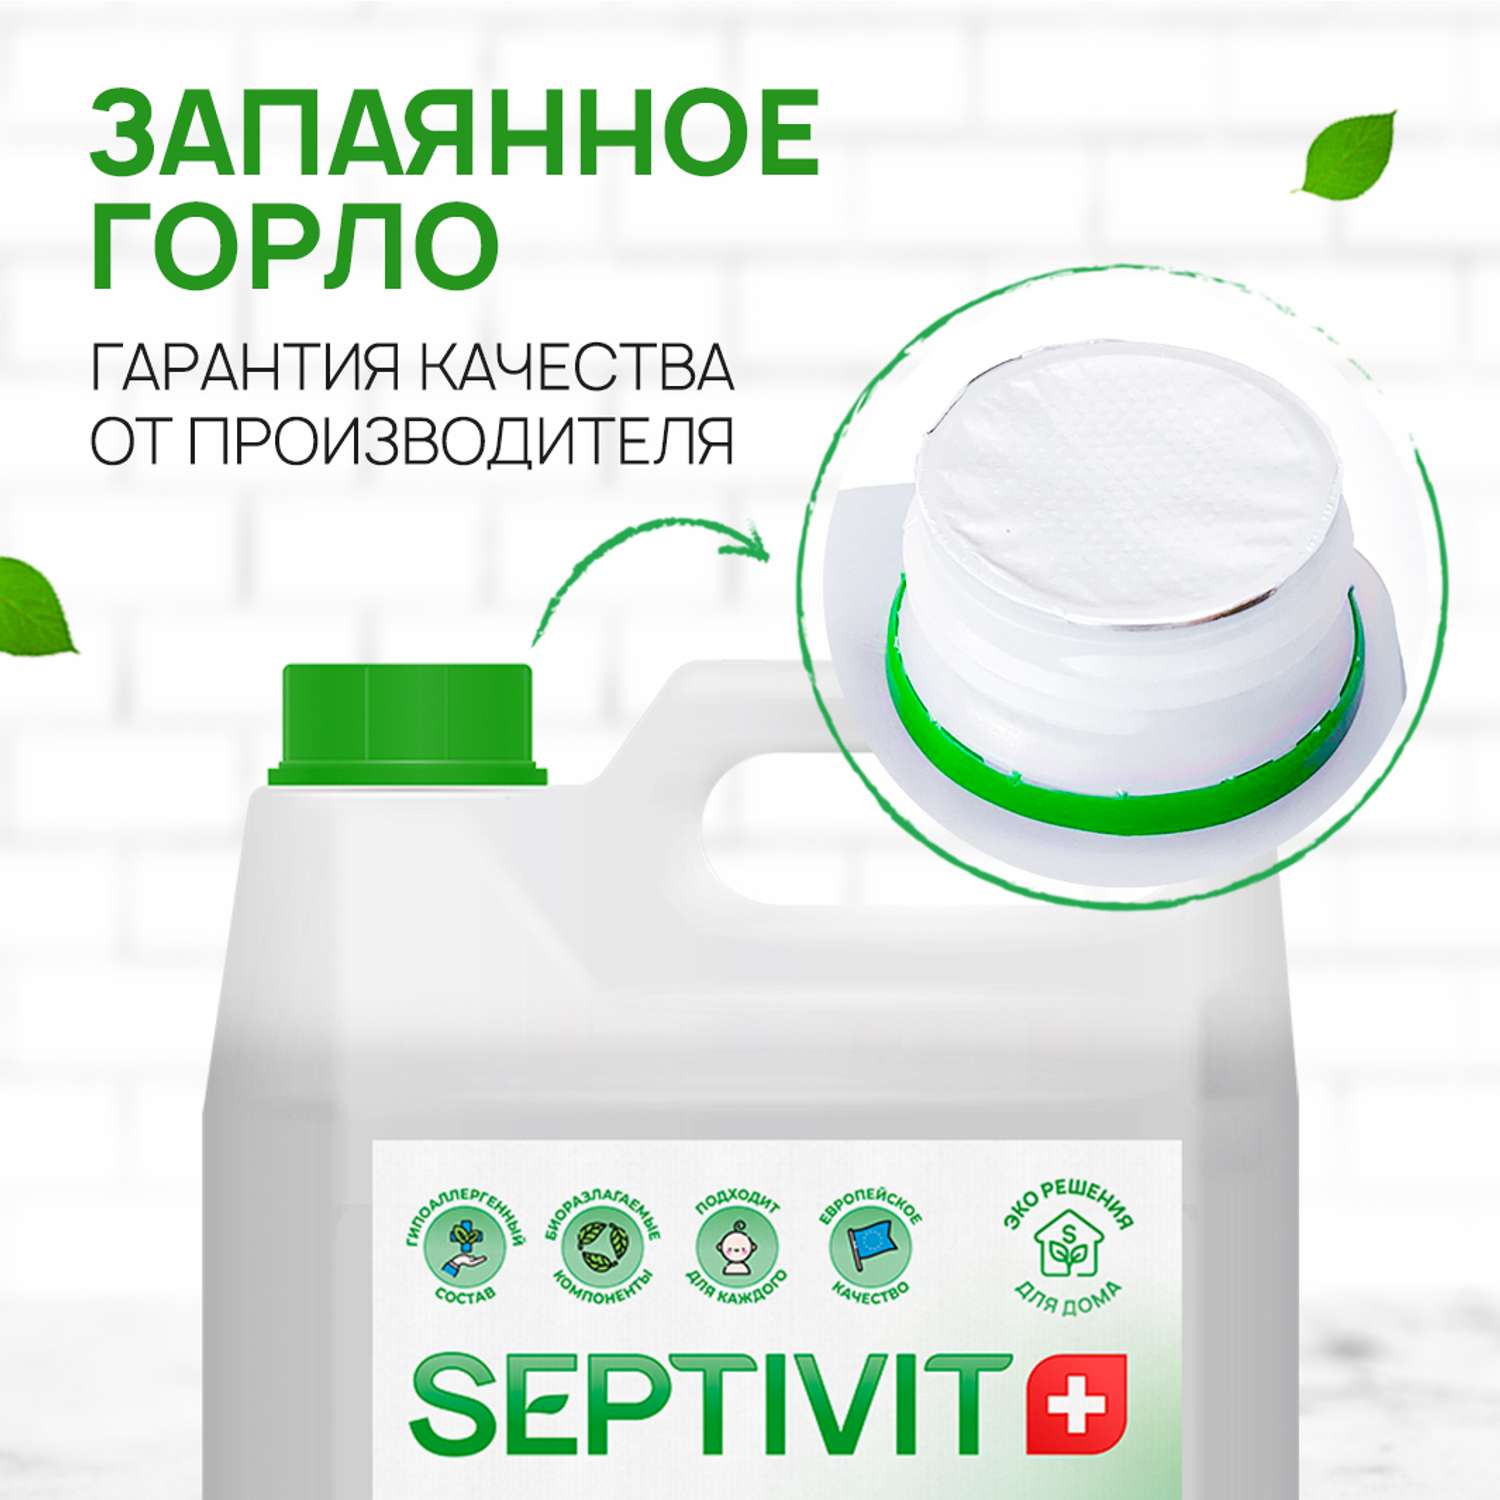 Жидкое мыло SEPTIVIT Premium Лемонграсс и мята 5 л - фото 5